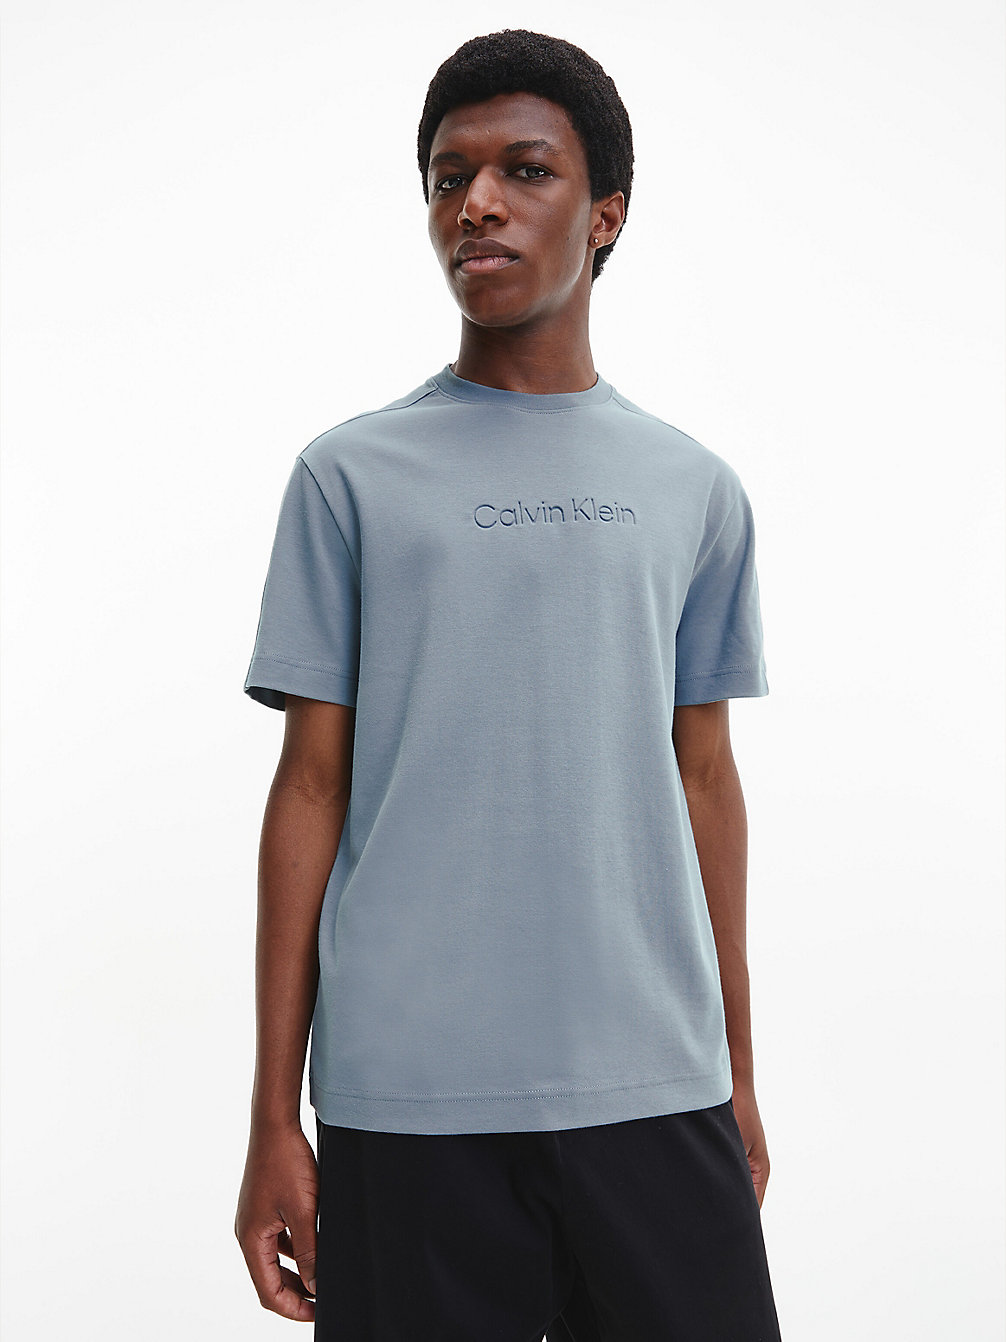 GREY TAR Relaxtes T-Shirt Aus Bio-Baumwolle undefined Herren Calvin Klein